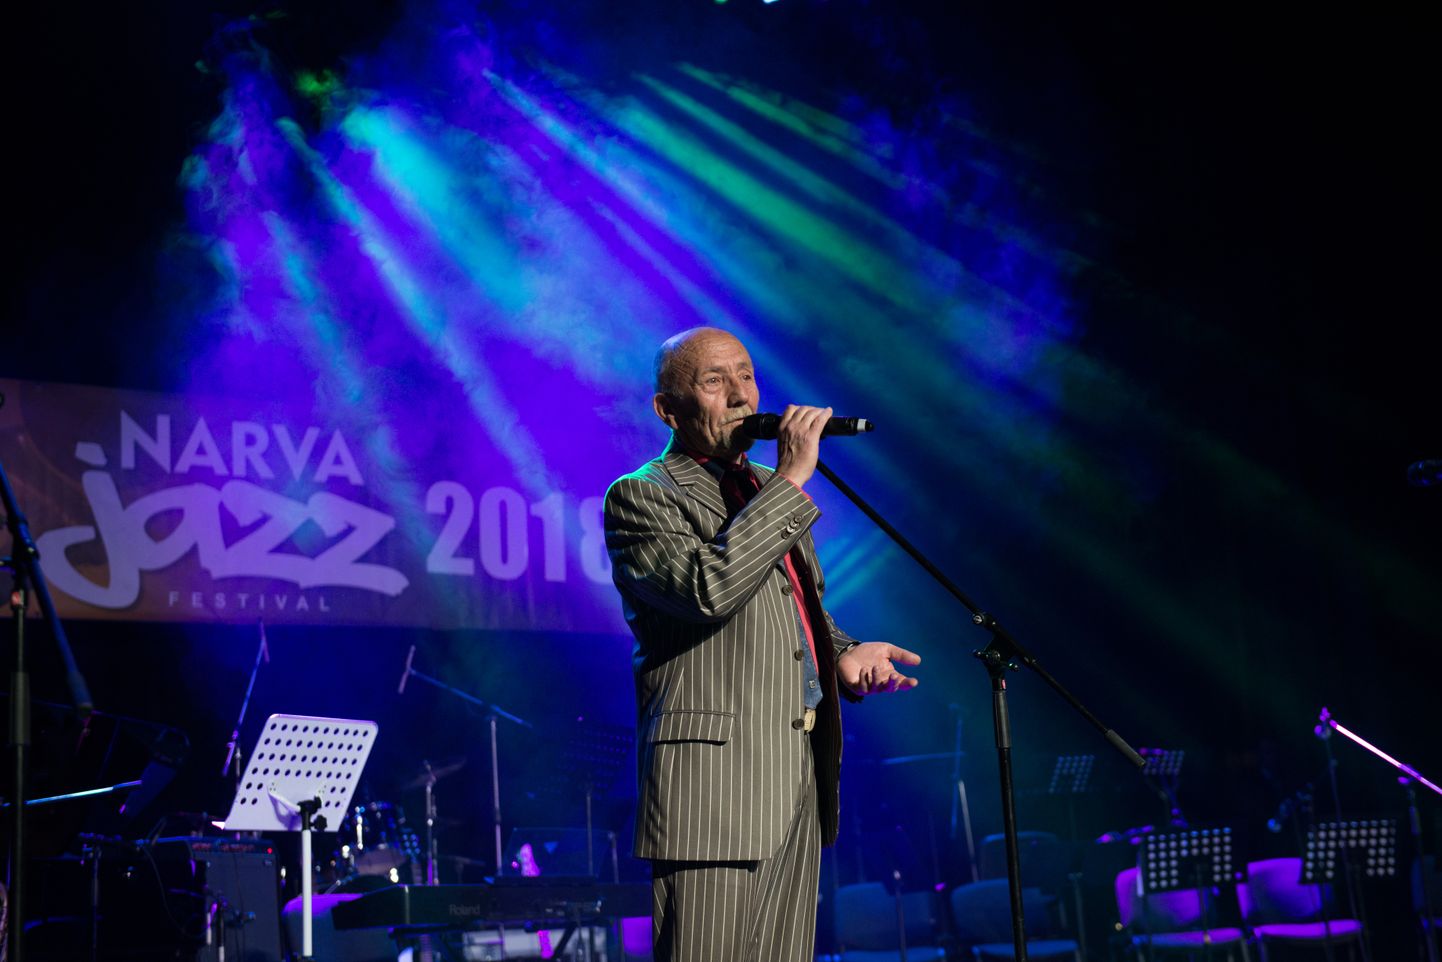 Festivali "Narva Jazz" looja ja korraldaja, saksofonist, pedagoog, bändiliider, helilooja ja arranžeerija, Narva aukodanik Boriss Paršin.